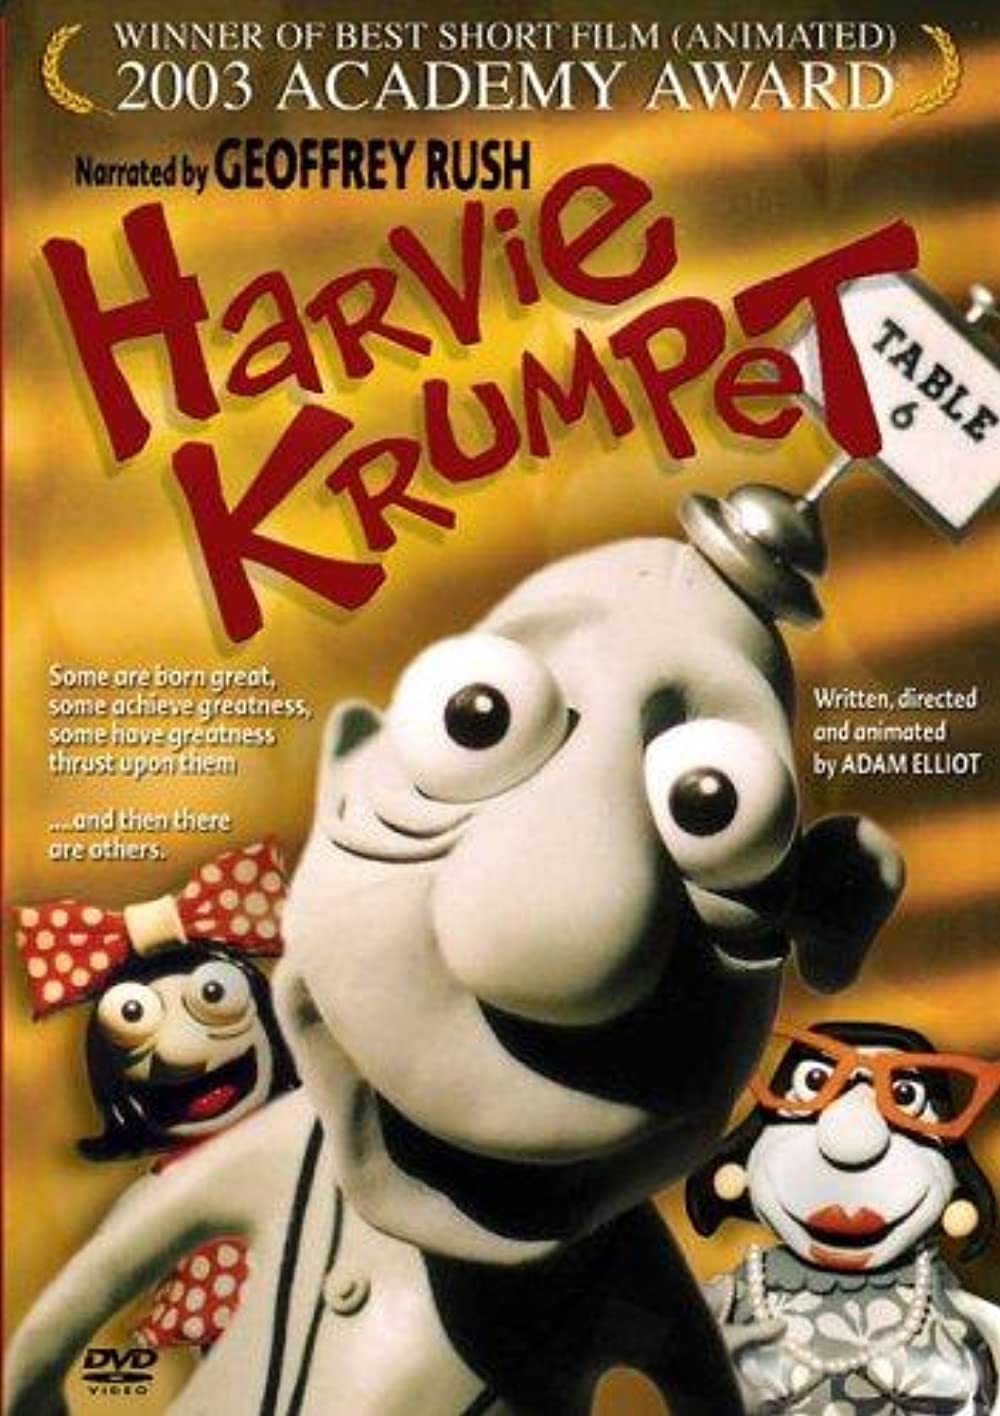 Harvie Krumpet (Short 2003)